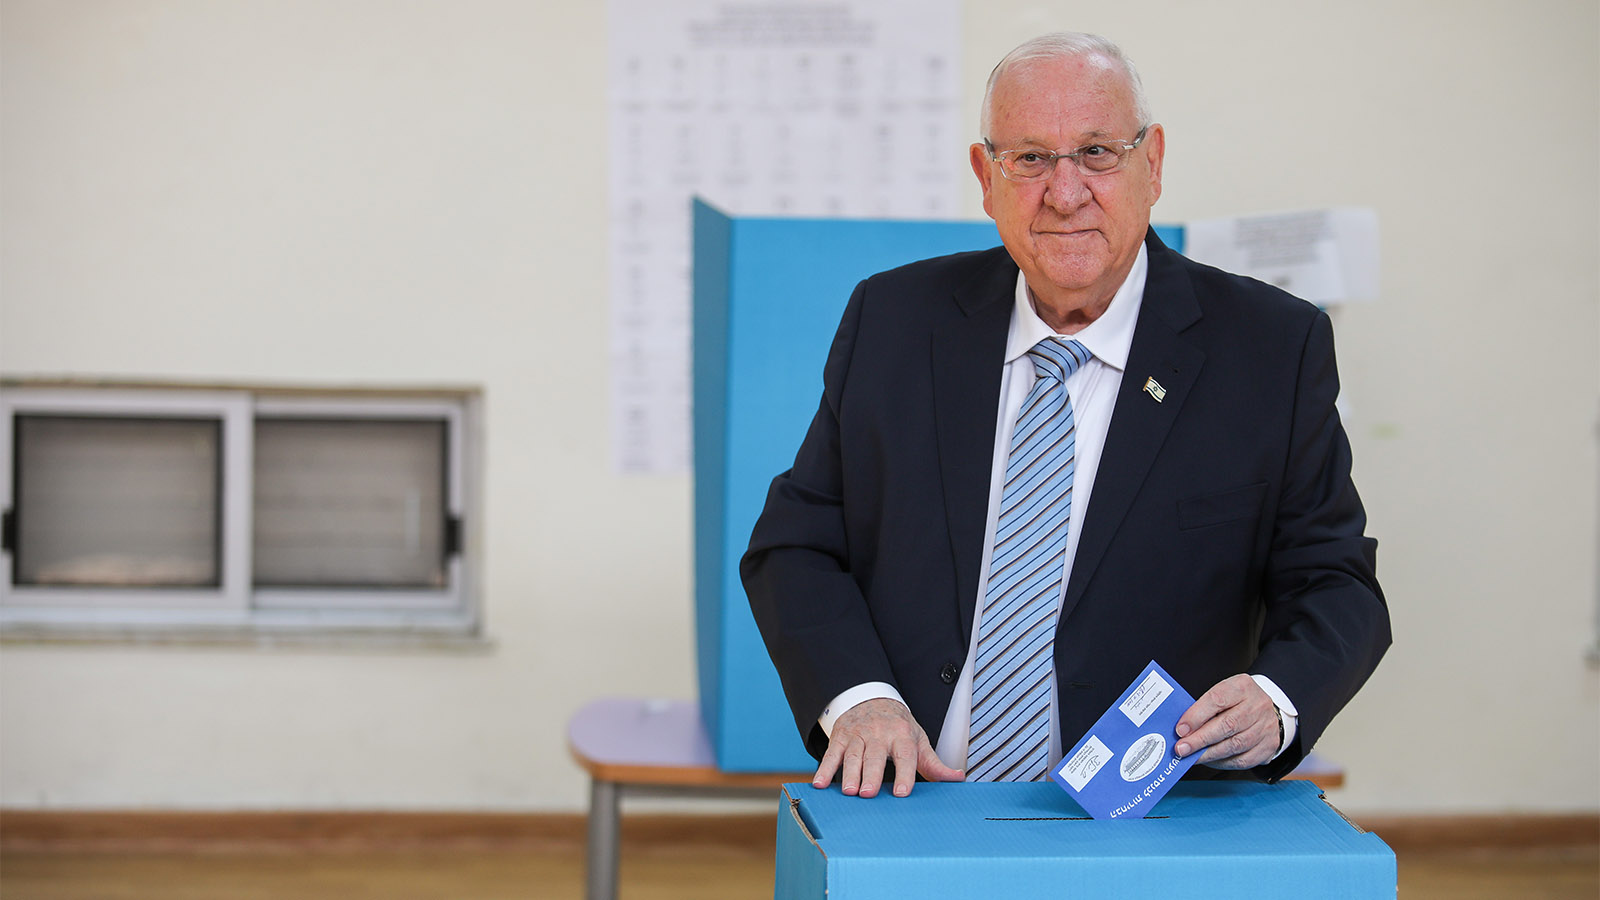 נשיא המדינה ריבלין מצביע בבחירות לכנסת ה-21. (צילום: הדס פרוש/פלאש90)